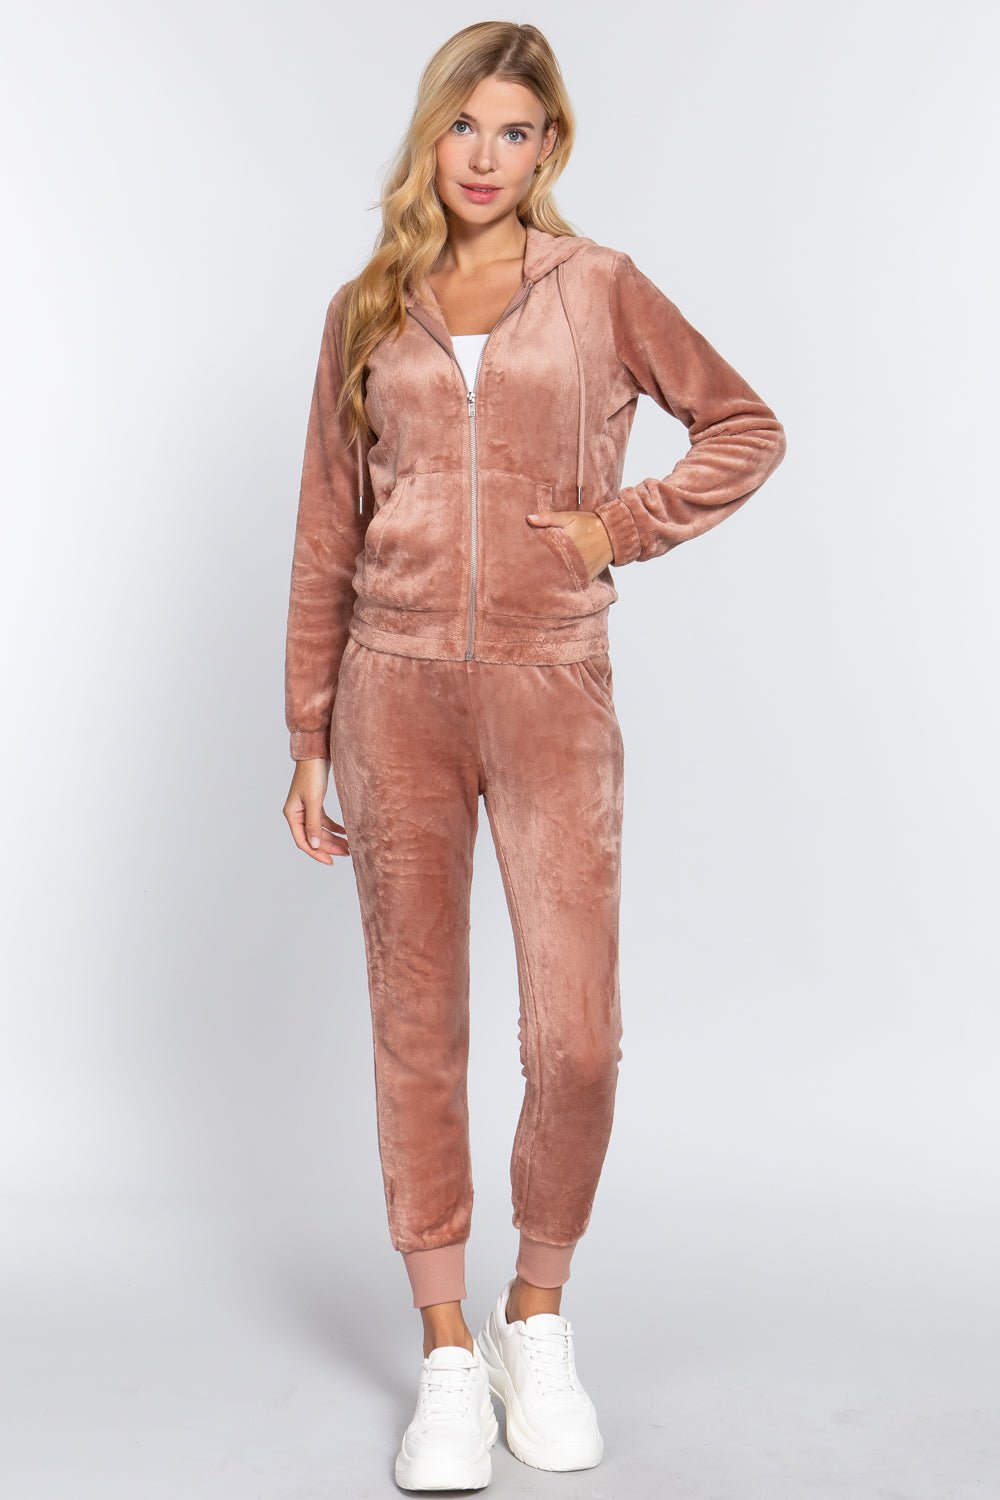 Sand Pink - Faux Fur Jacket & Jogger Pants Outfit Set - 9 colors - womens jogging set at TFC&H Co.